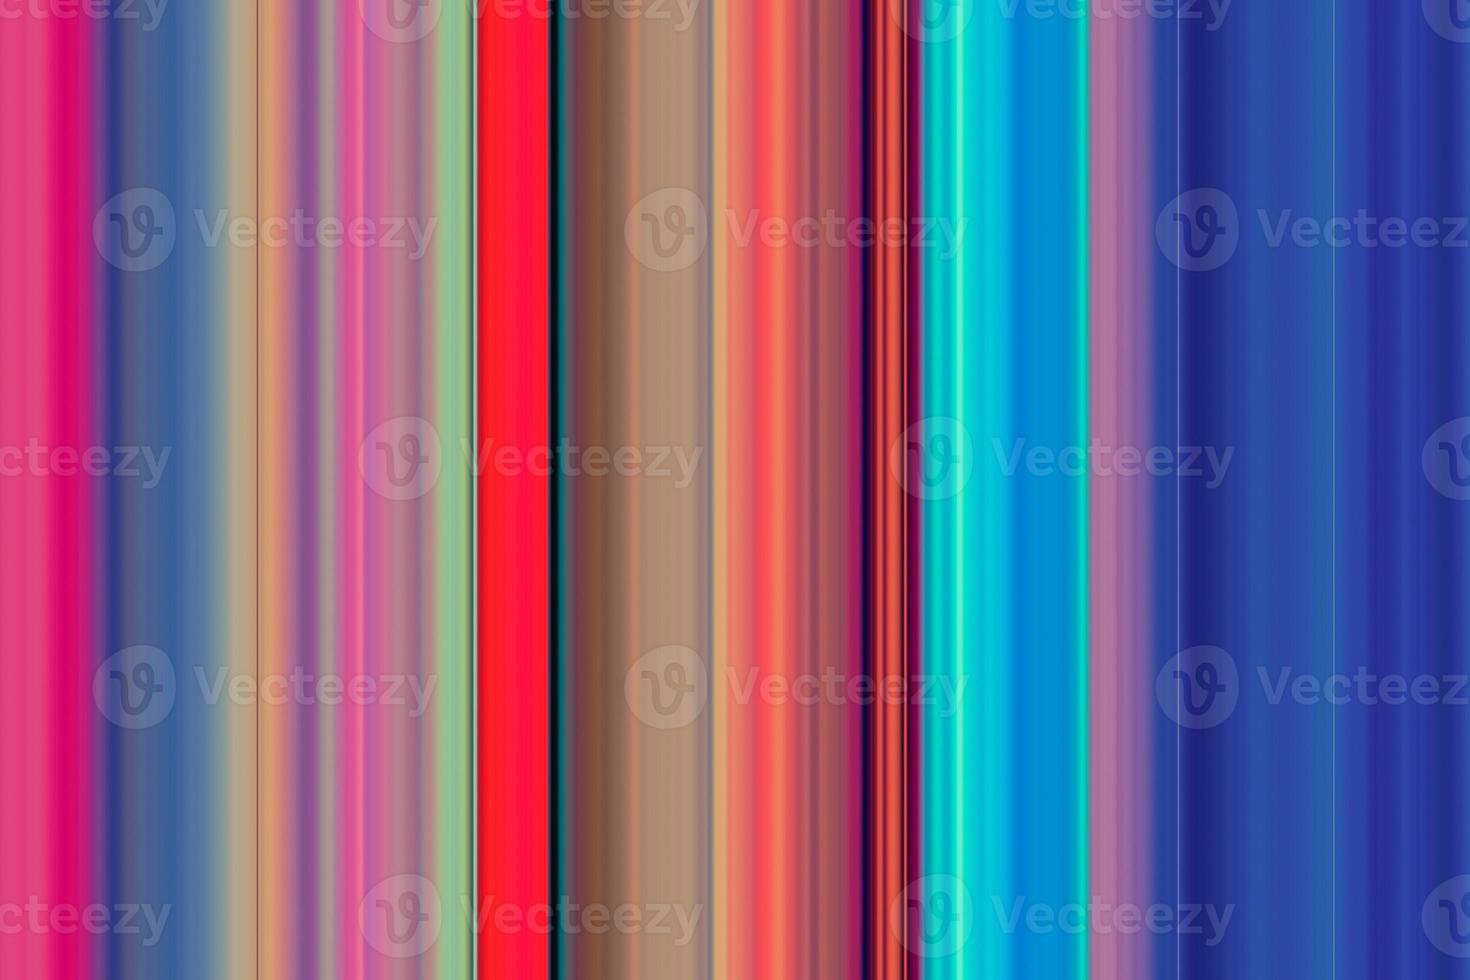 Unique colorful striped background photo